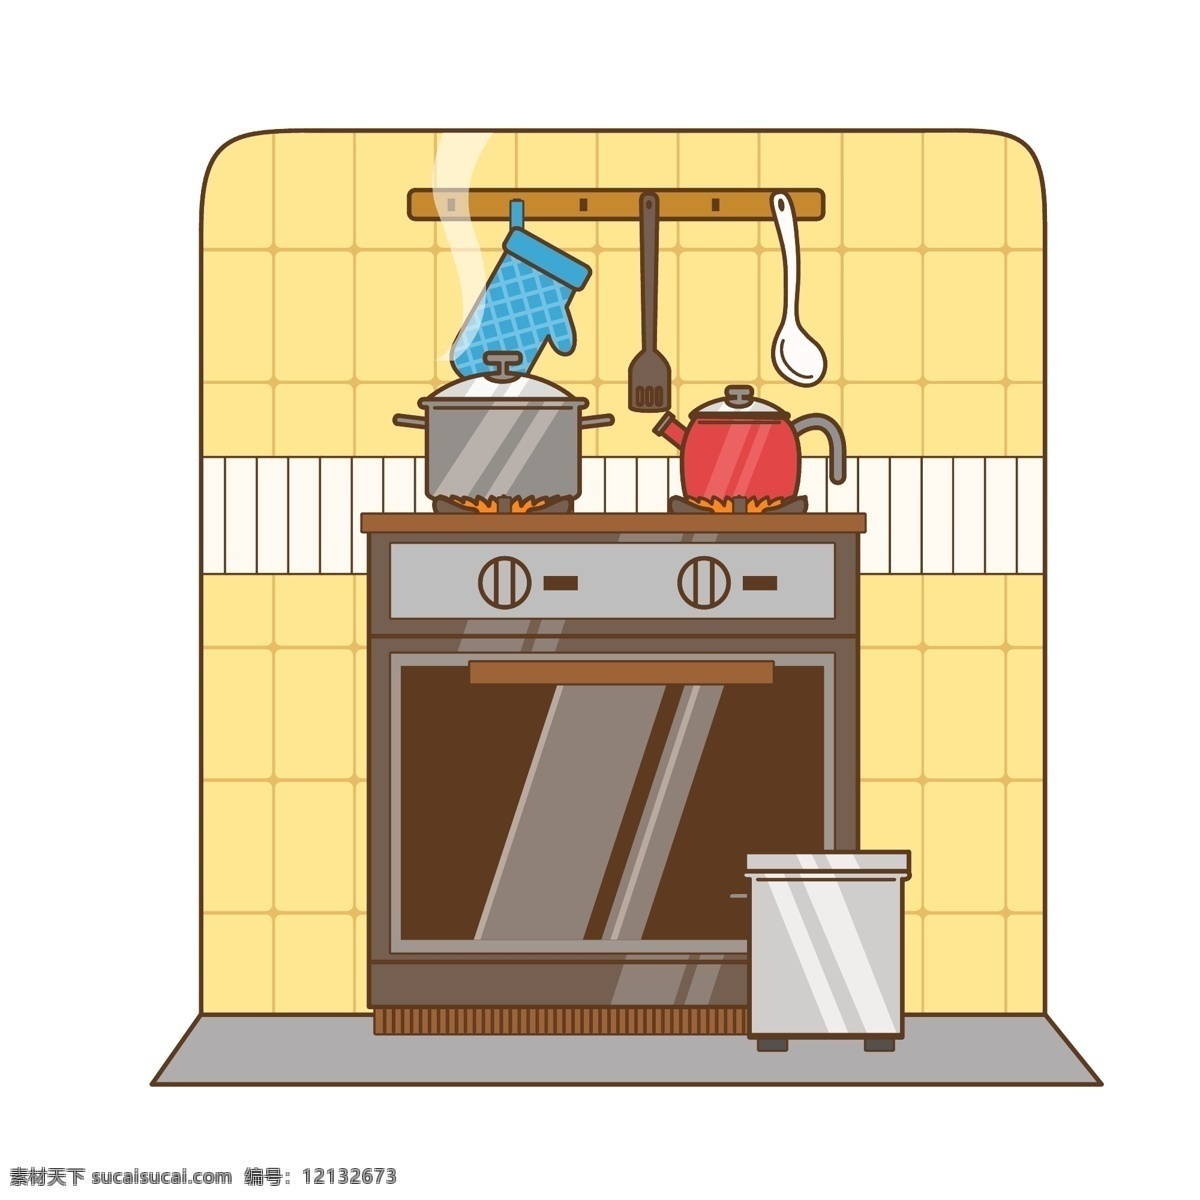 烹饪 用品 日用品 元素 商用 工具 灶台 厨房 出具 炊具 锅子 煮饭